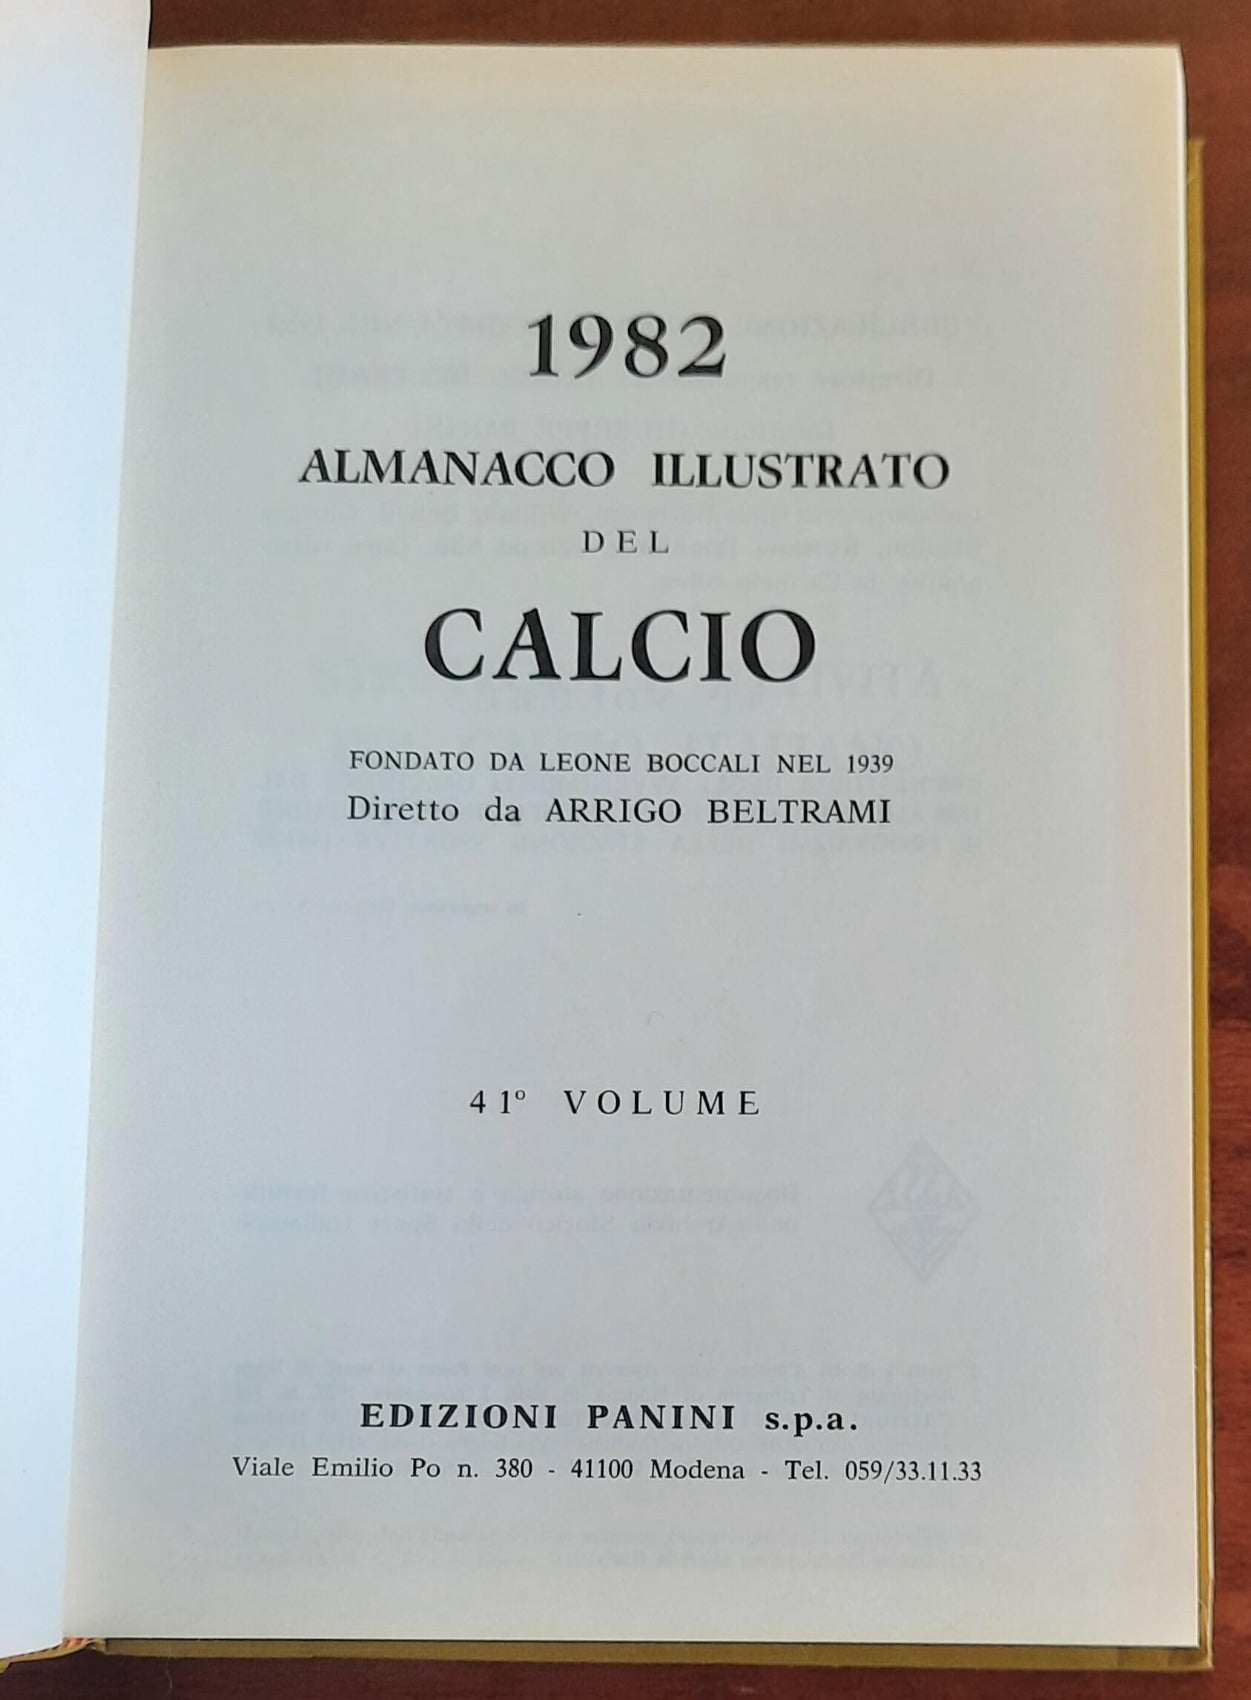 Almanacco illustrato del calcio 1982 - Edizioni Panini